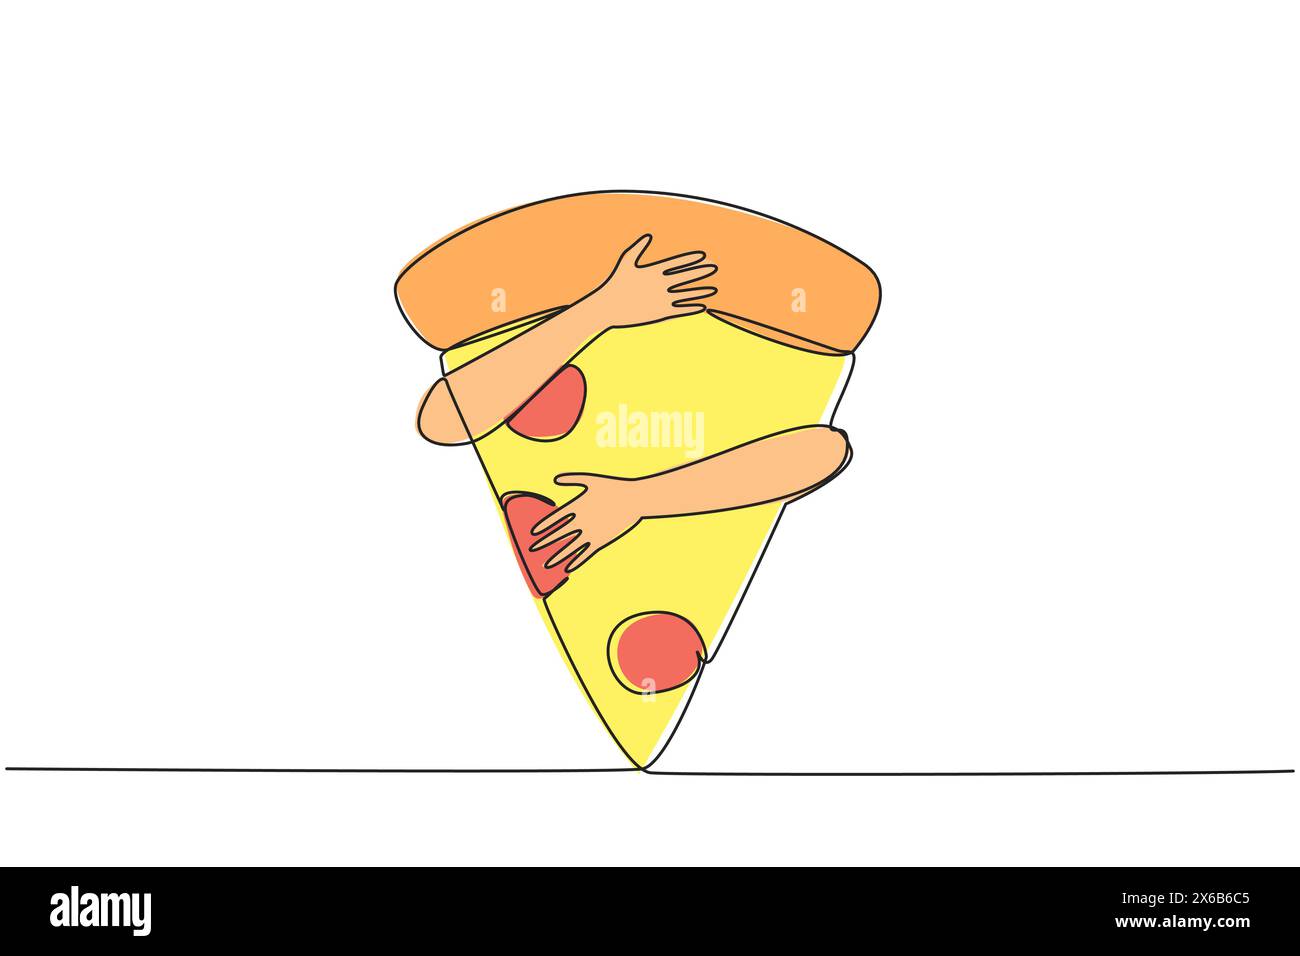 Linea singola continua per disegnare le mani che abbracciano la fetta di pizza. Una fetta di pizza contiene fino a 700 calorie. Le calorie in eccesso non fanno bene al corpo Illustrazione Vettoriale